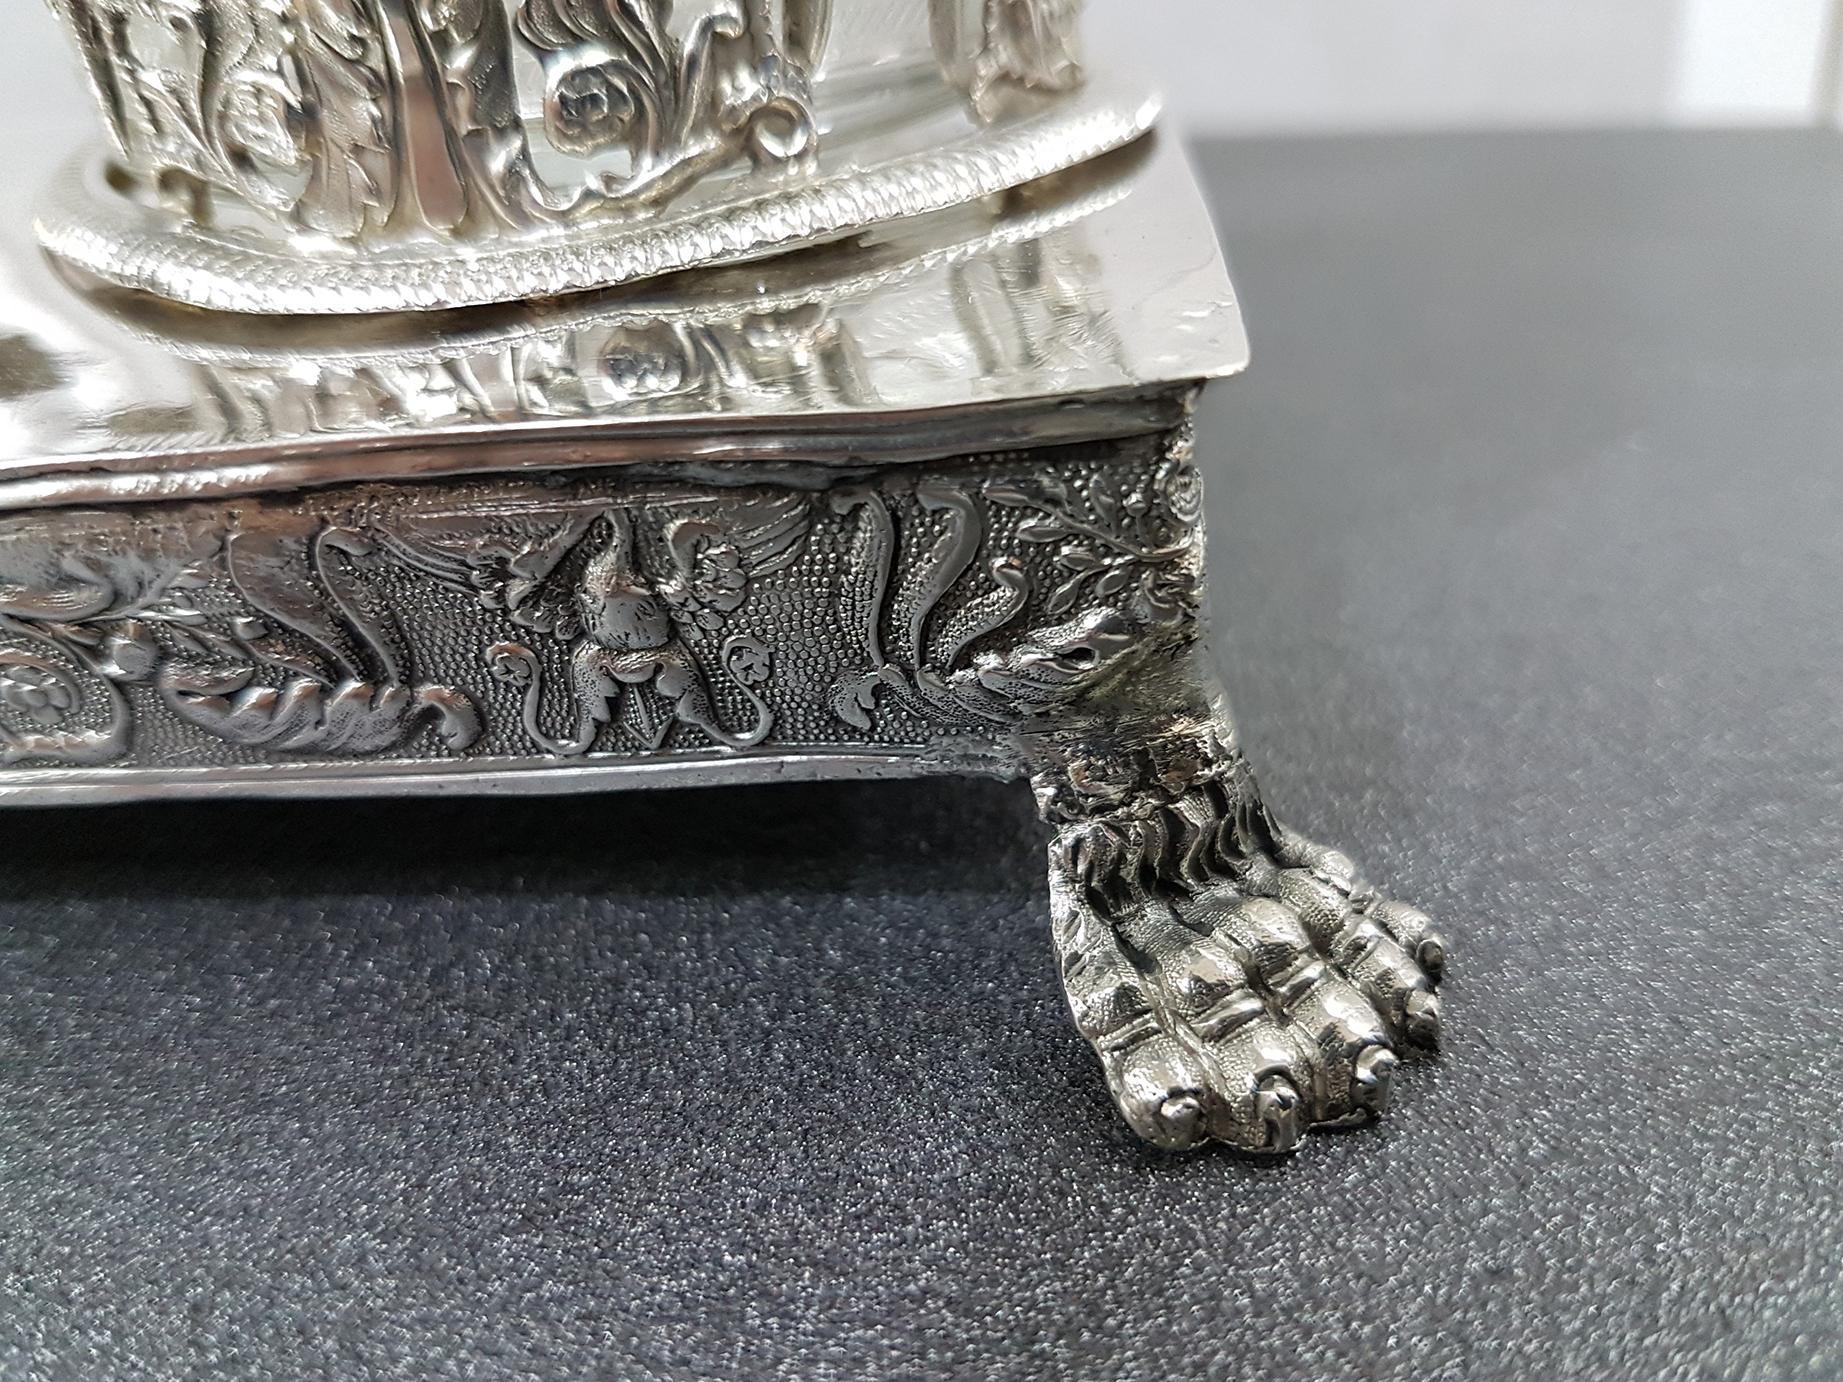 Italienisches Silber 950-Krümelentferner von Gioanni Gilardi, Silberschmied in Turin, 1824 (19. Jahrhundert)